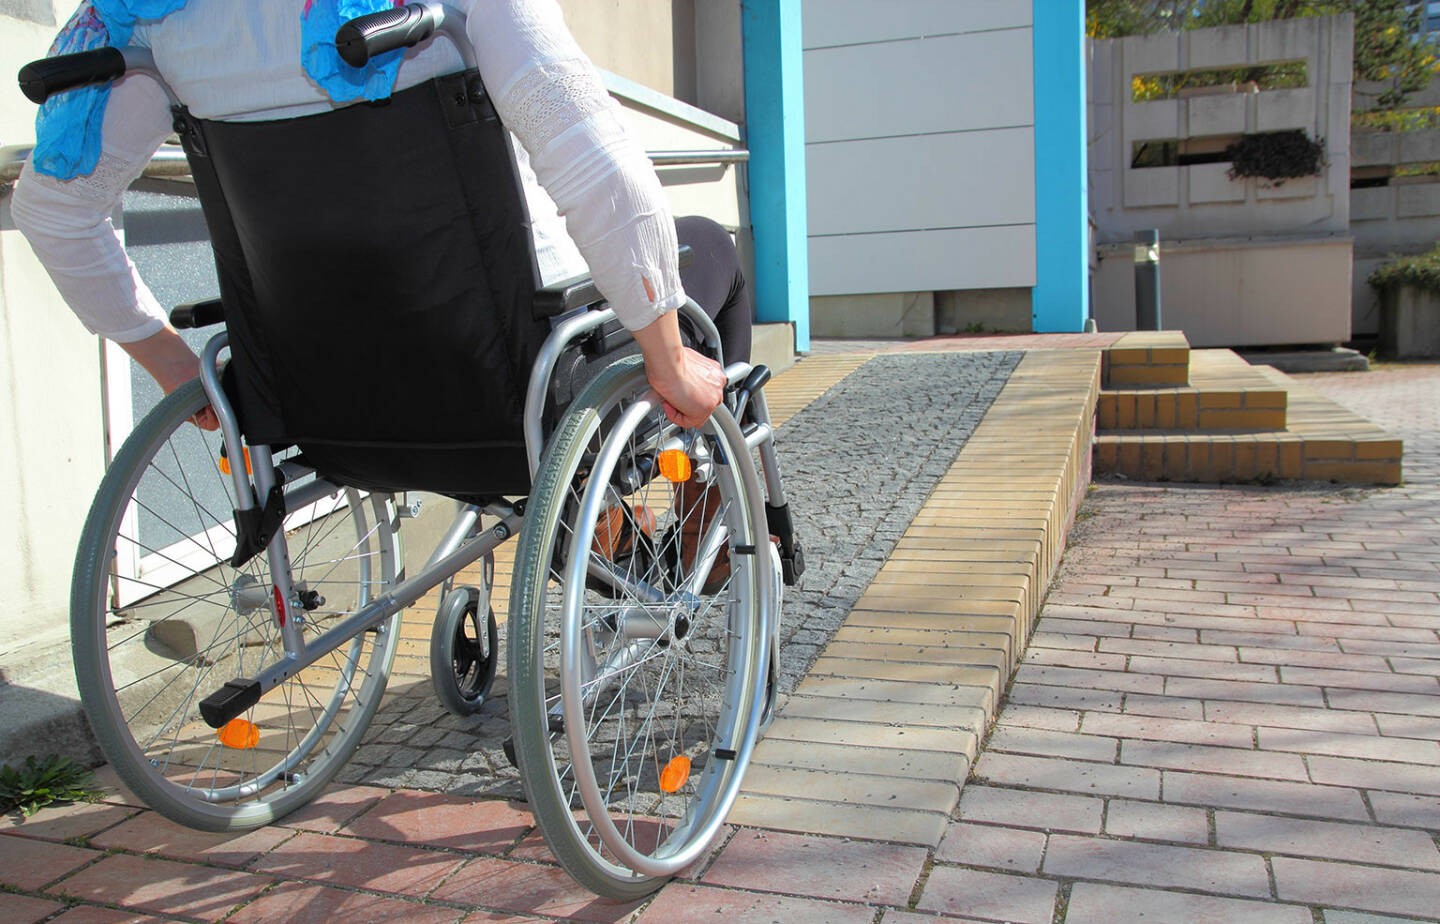 Rollstuhl, barrierefrei, Rampe, Handicap http://www.shutterstock.com/de/pic-187933352/stock-photo-woman-in-a-wheelchair-using-a-ramp.html (Bild: shutterstock.com)